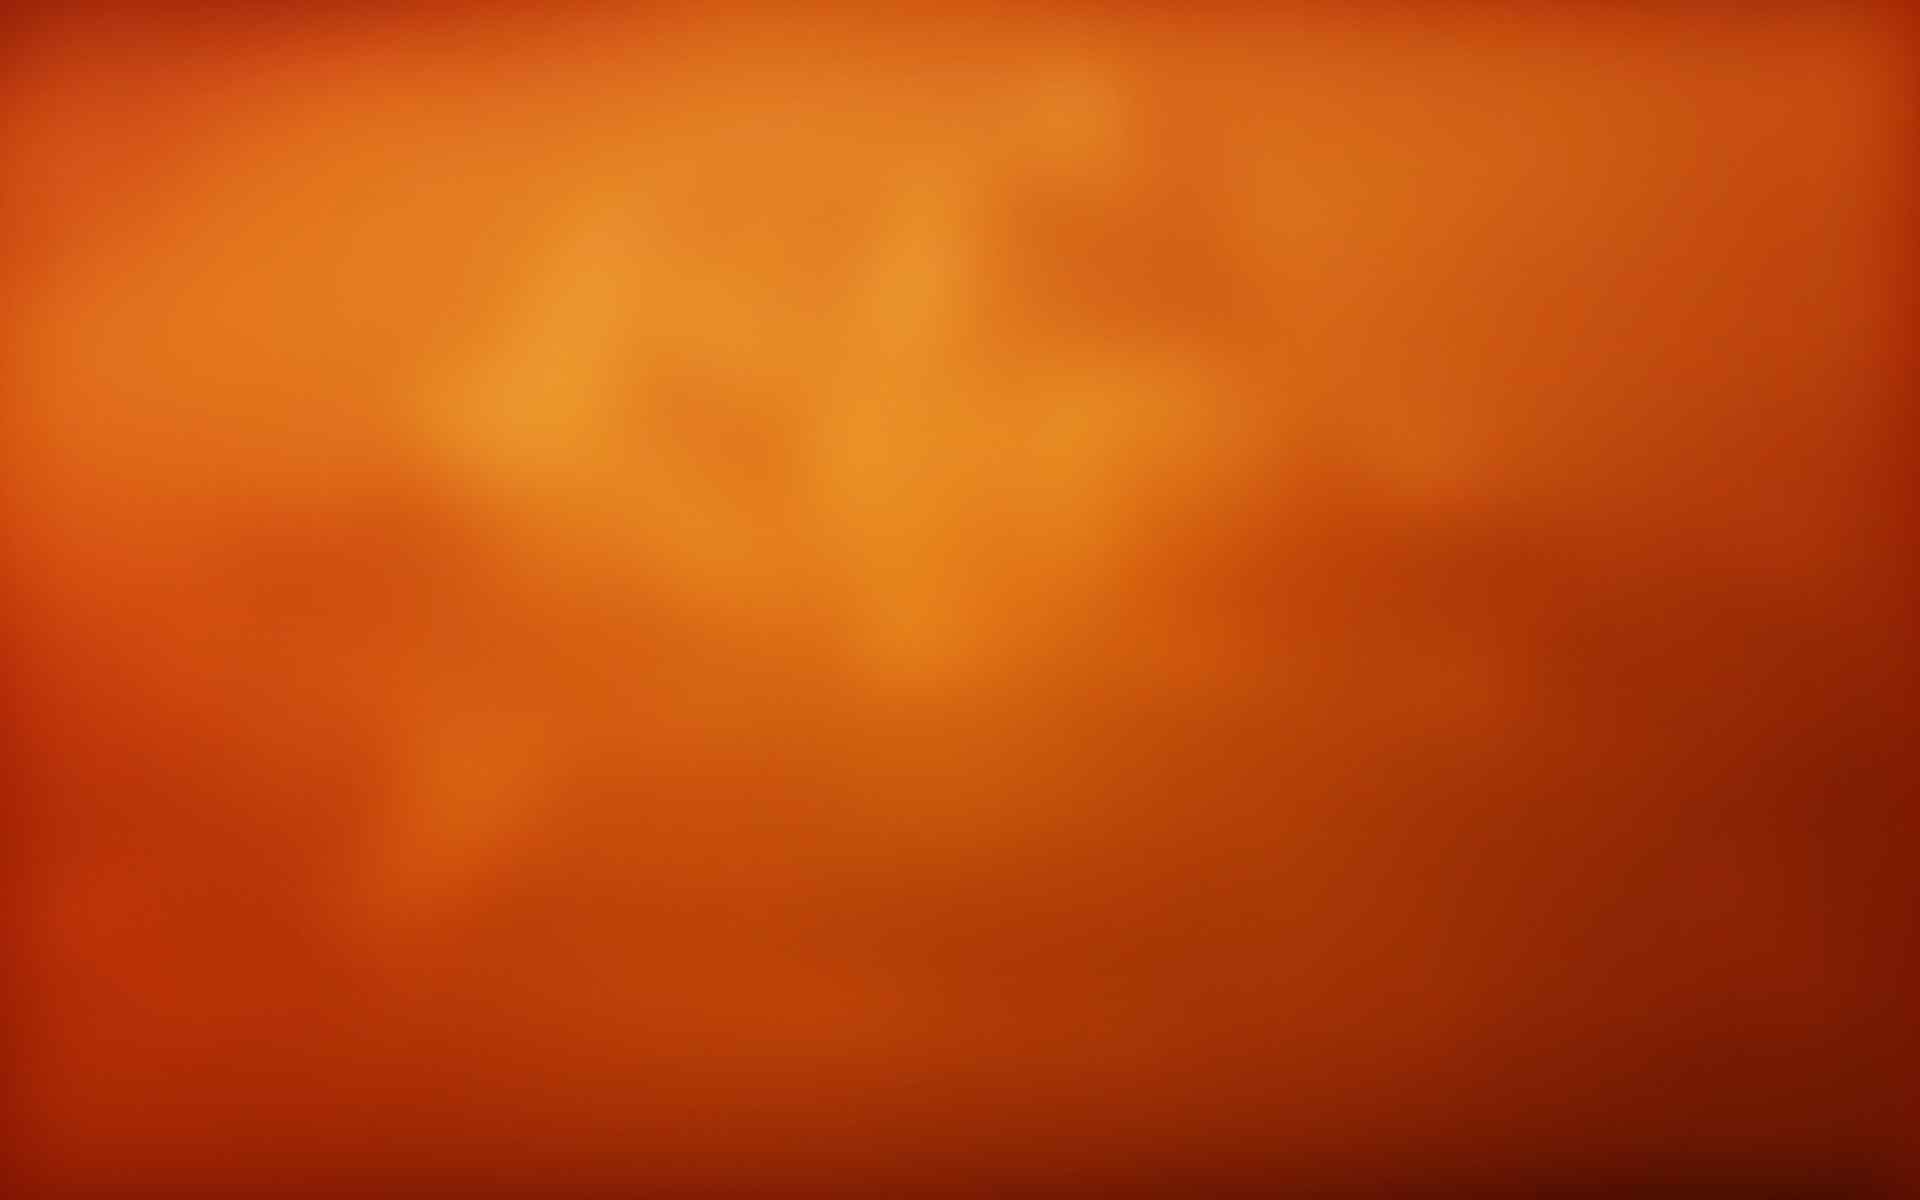 橙色纯色背景图片-橙色纯色背景素材图片-千库网